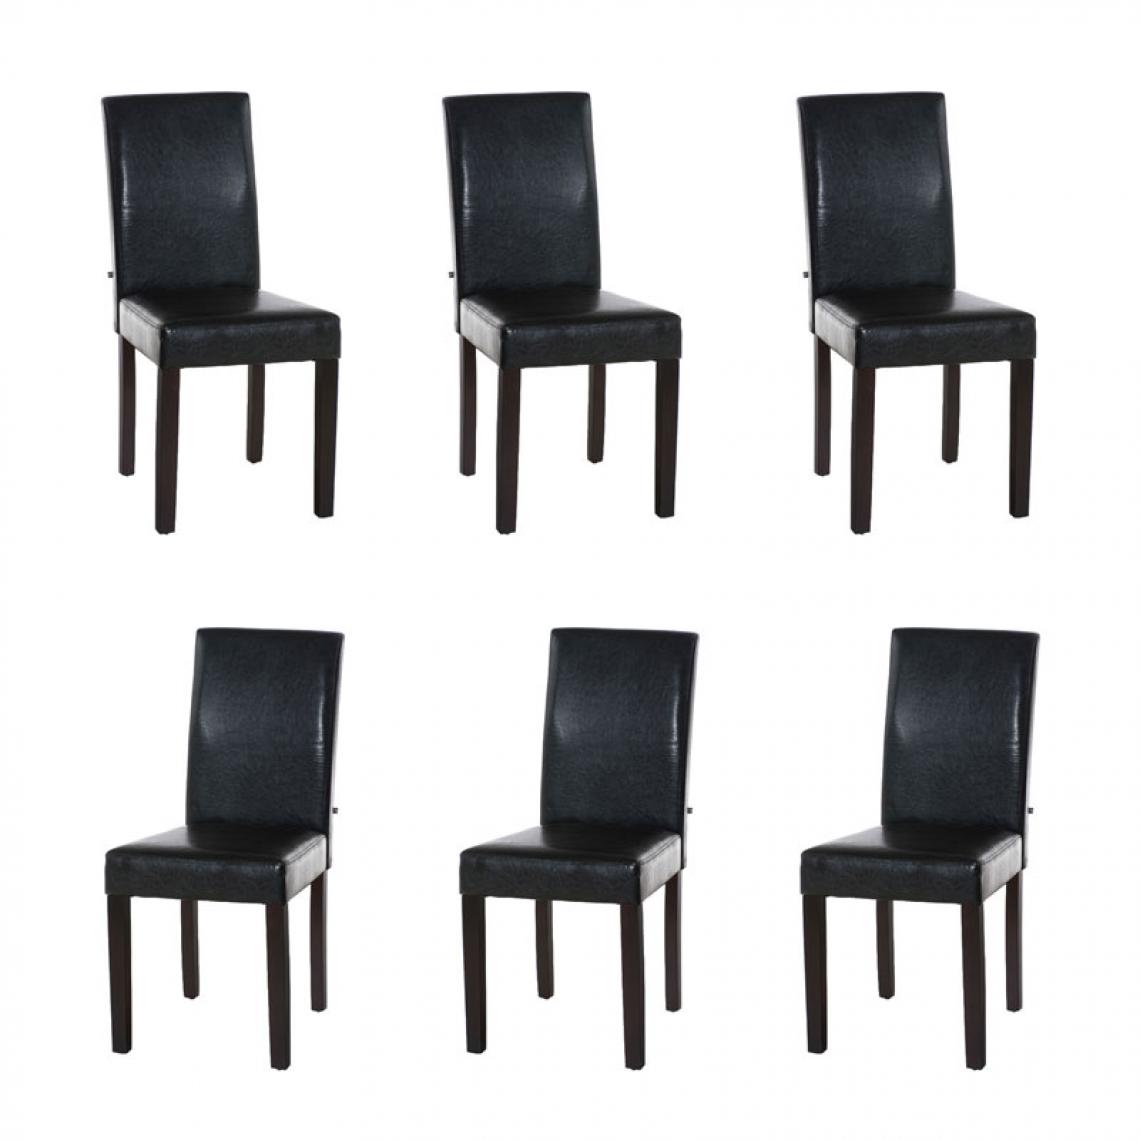 Icaverne - Splendide Lot de 6 chaises de salle à manger ligne Rabat marron foncé couleur marron - Chaises